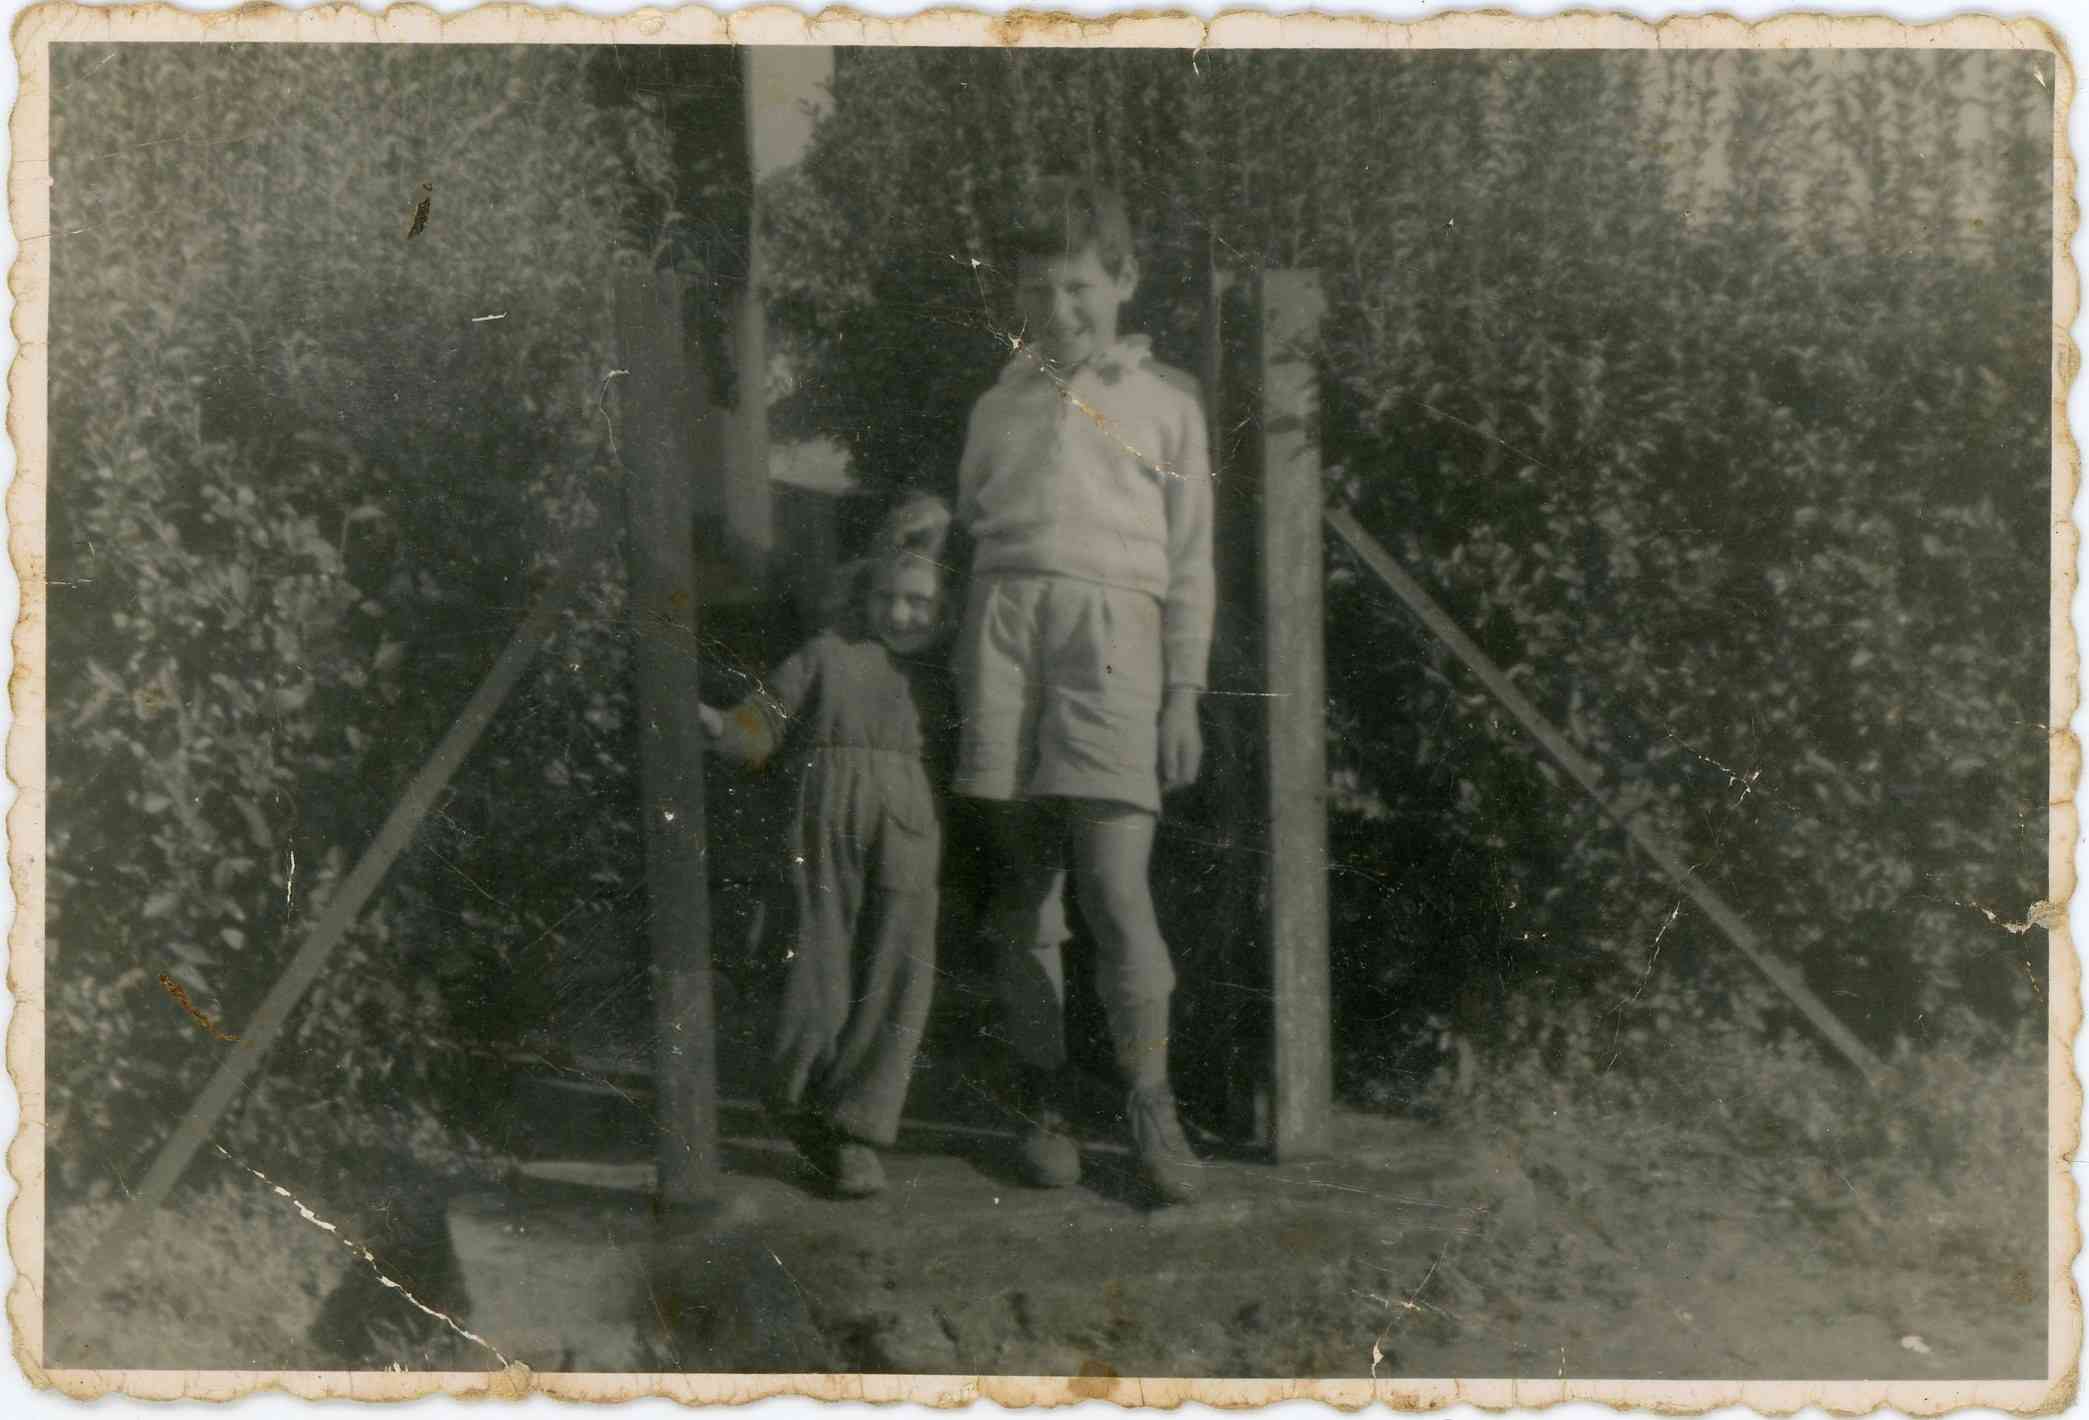 רבקה וצביקה אושרוביץ בפתח חצר המשפחה ברחוב יהודה הלוי 53 ברעננה שנה 1946